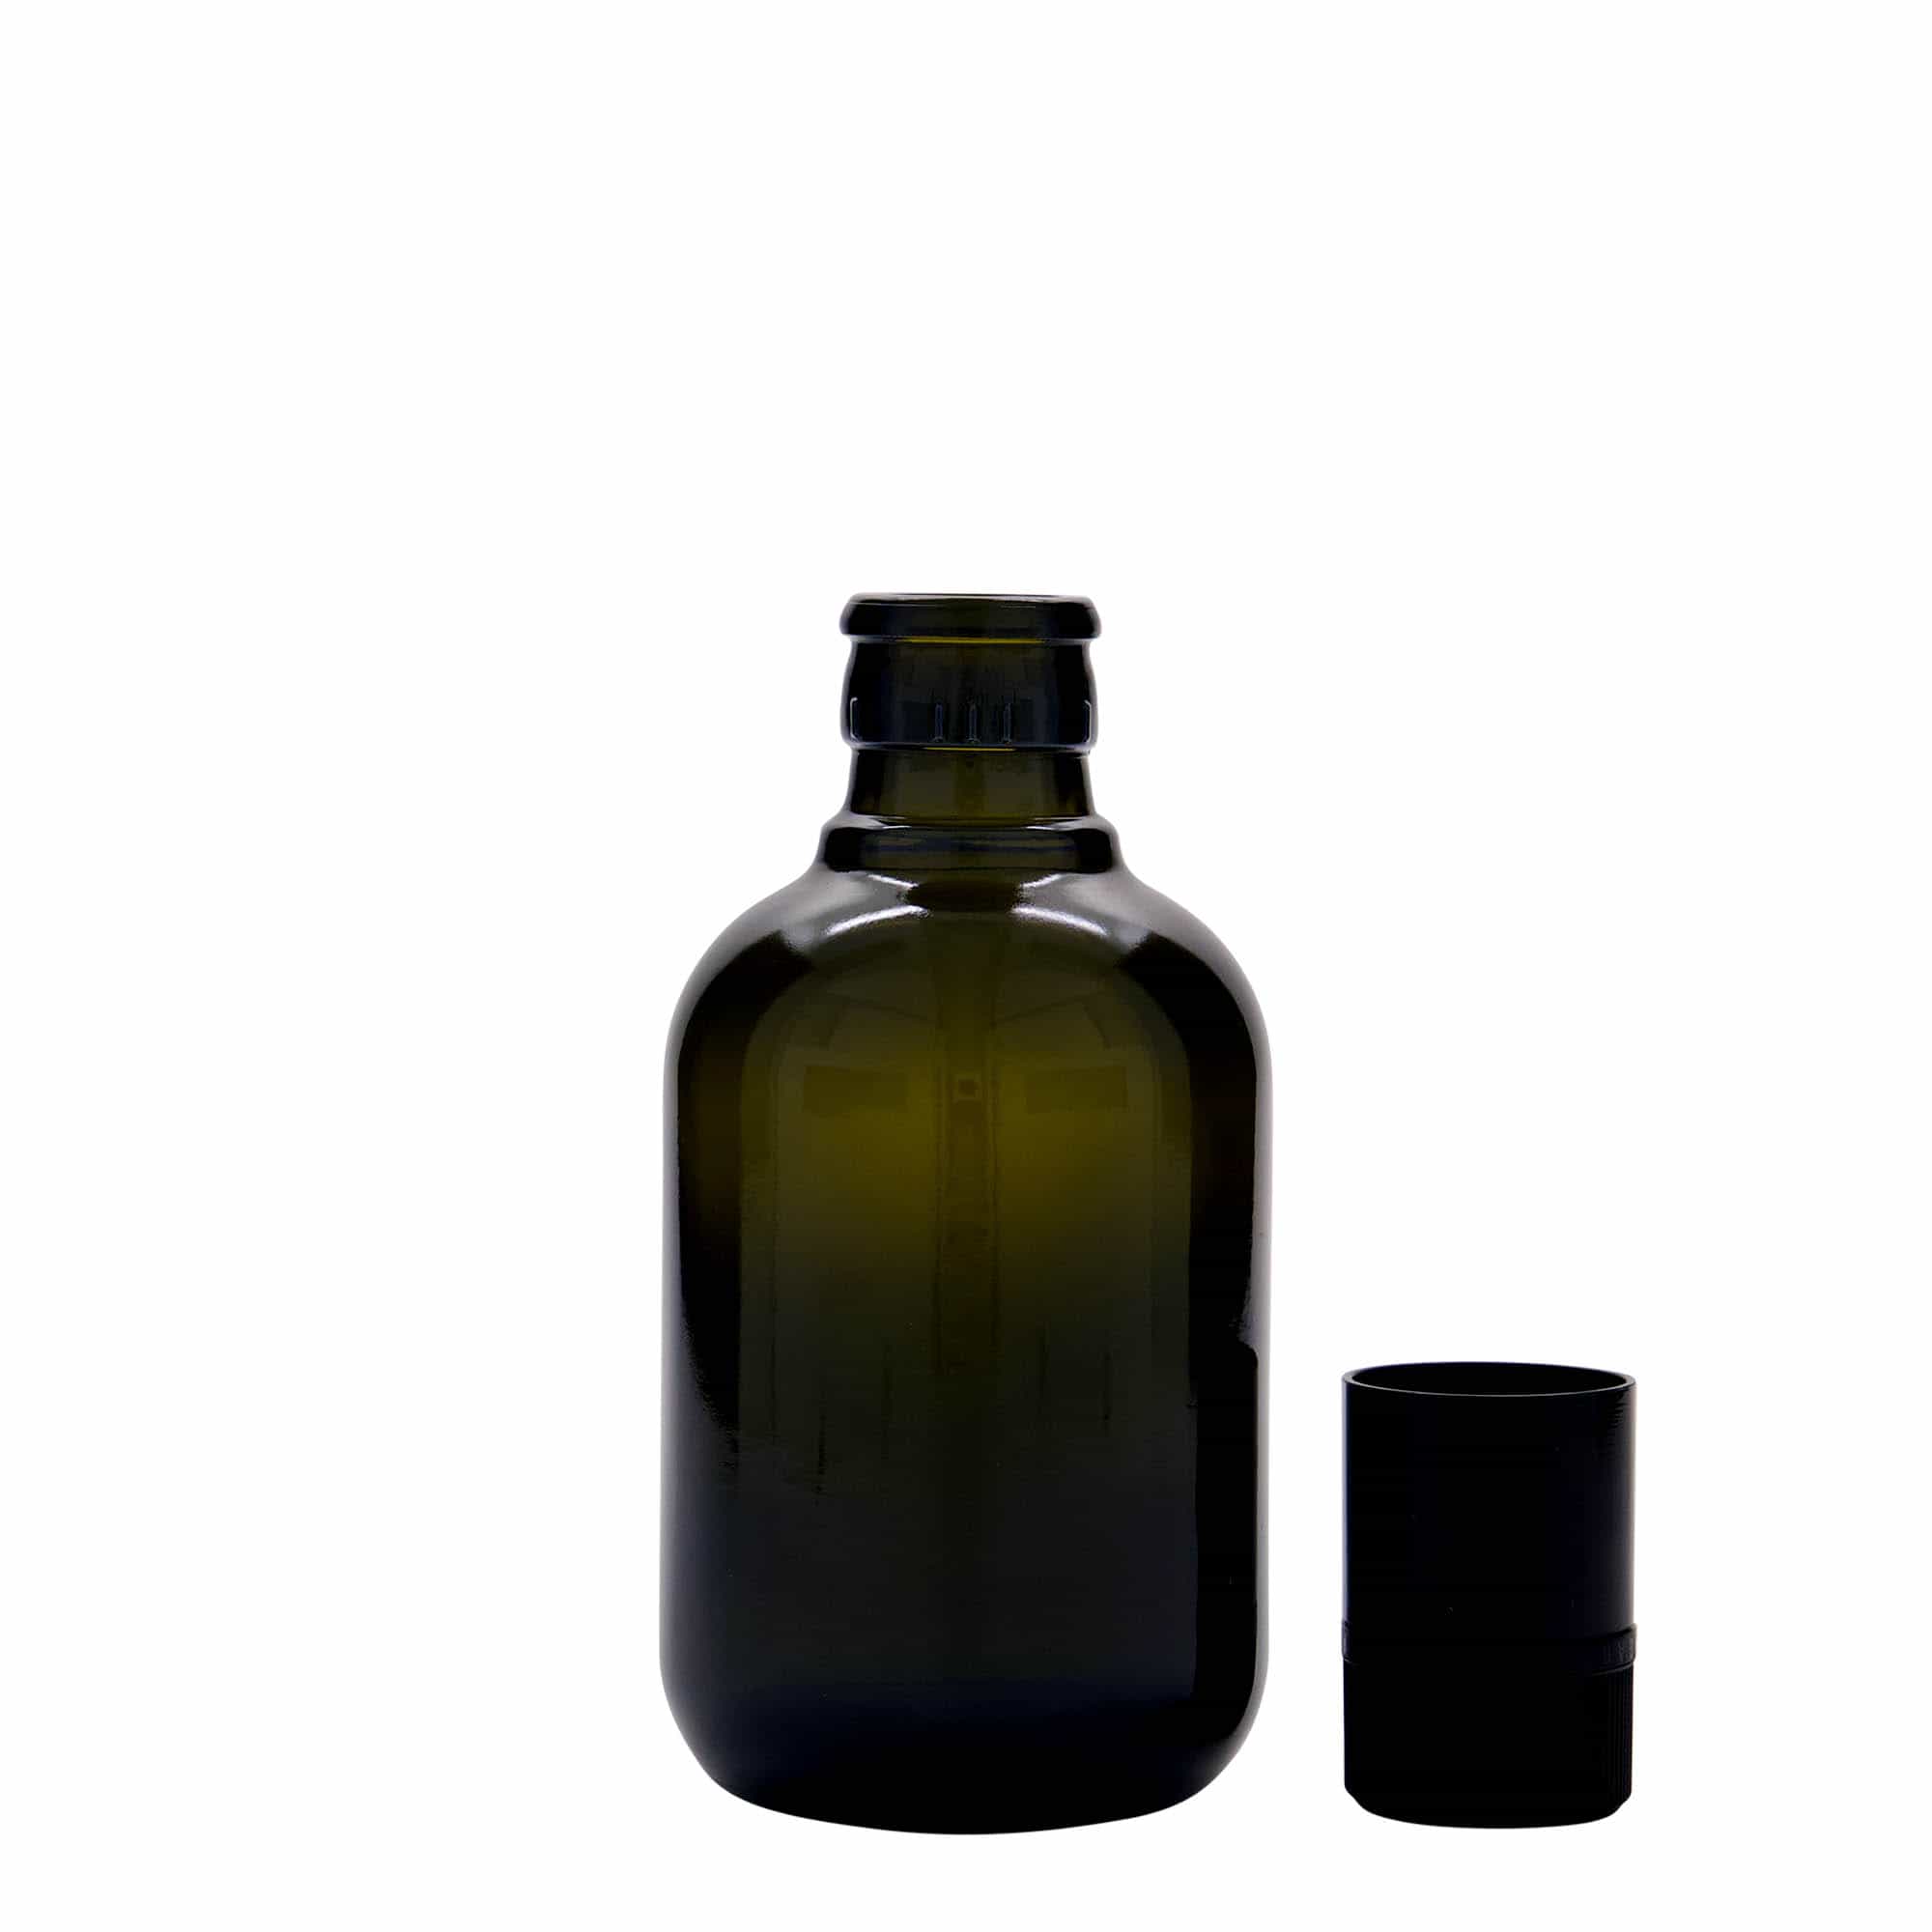 250 ml butelka na ocet/olej 'Biolio', szkło, kolor zielony antyczny, zamknięcie: DOP